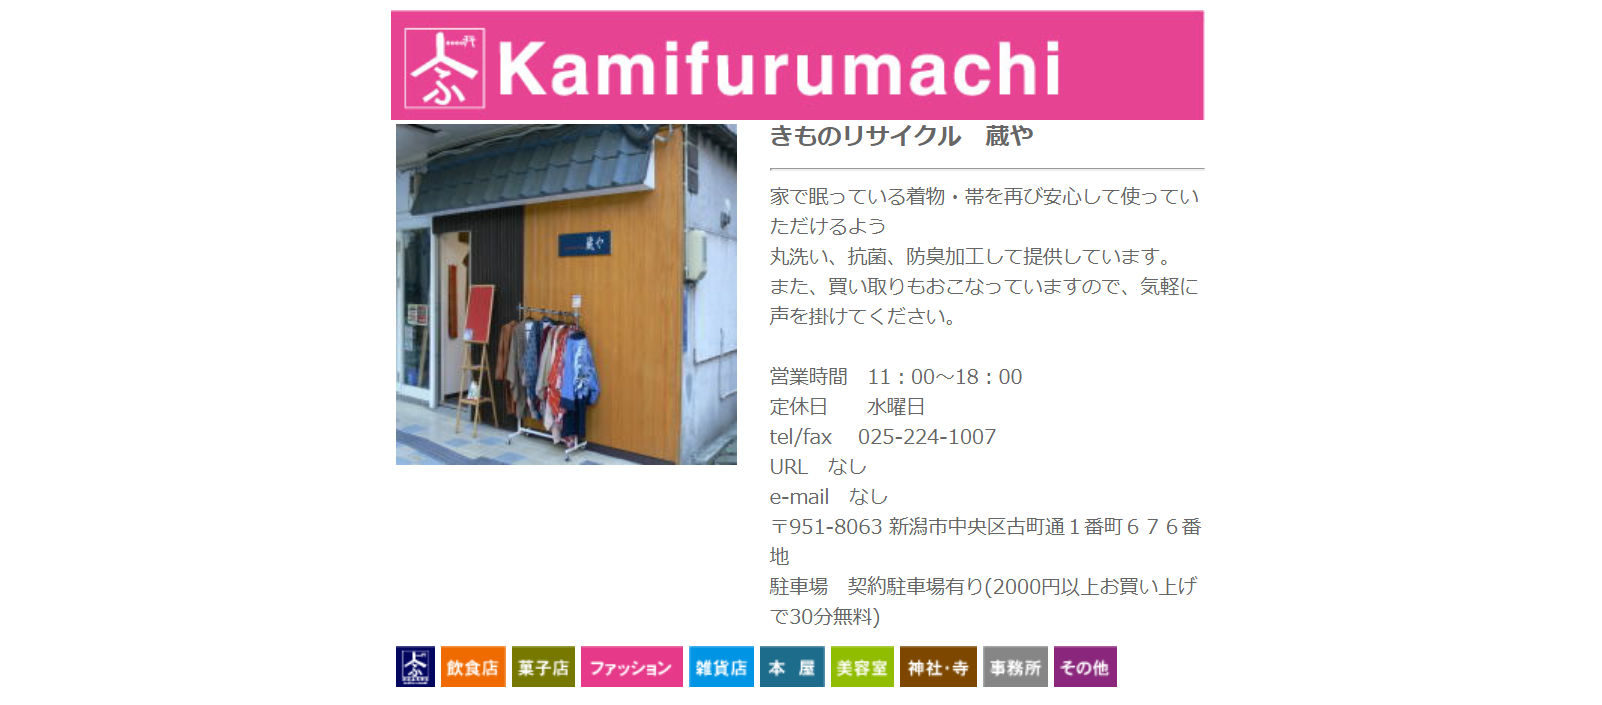 新潟県でおすすめの着物買取店をまとめました